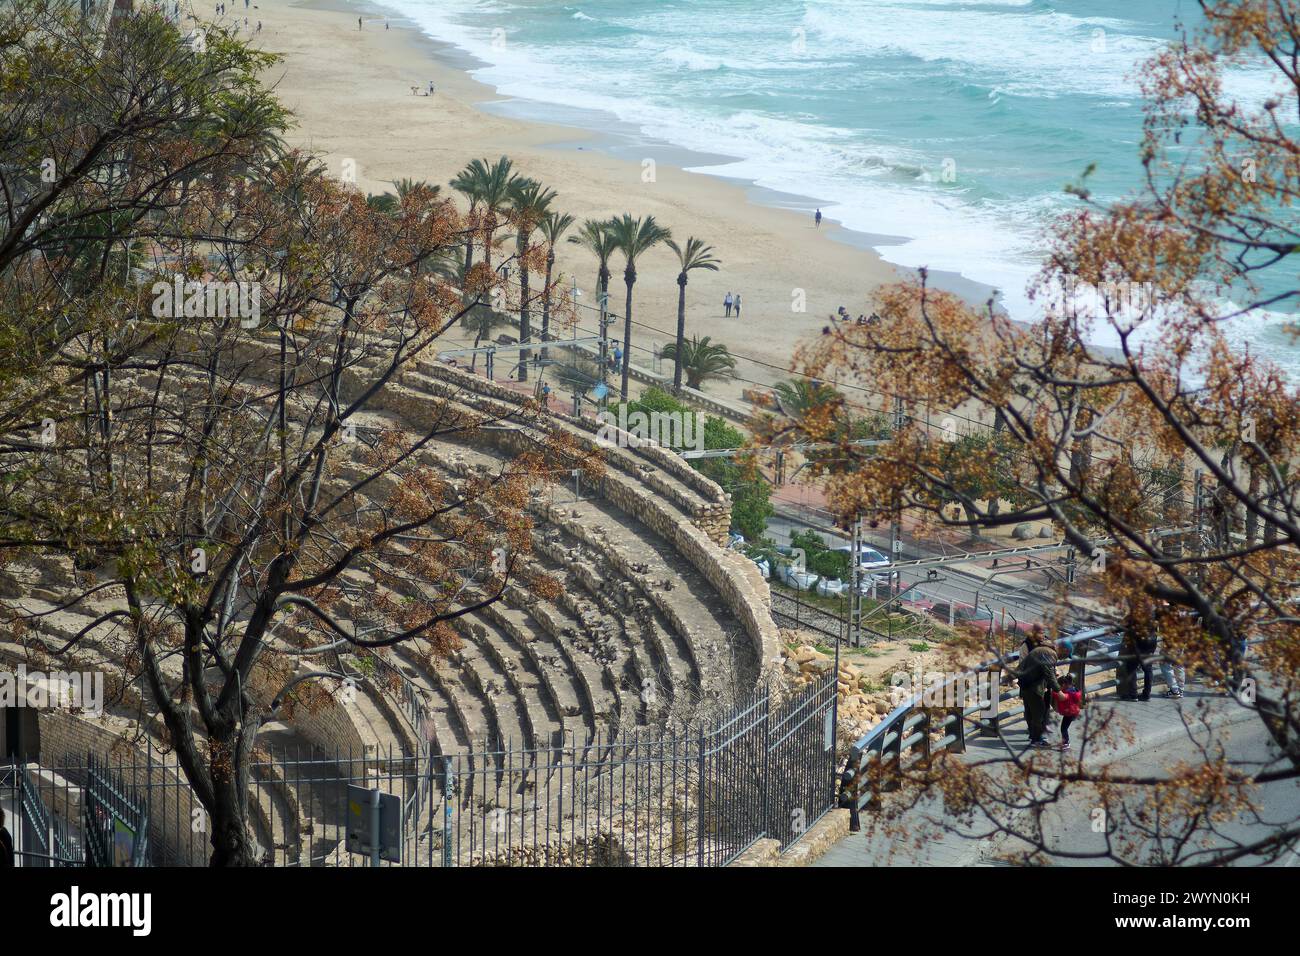 Beeindruckender Kontrast zwischen dem antiken römischen Amphitheater und dem Strand von Tarragona, der eine einzigartige Mischung aus Geschichte und natürlicher Schönheit schafft. Stockfoto